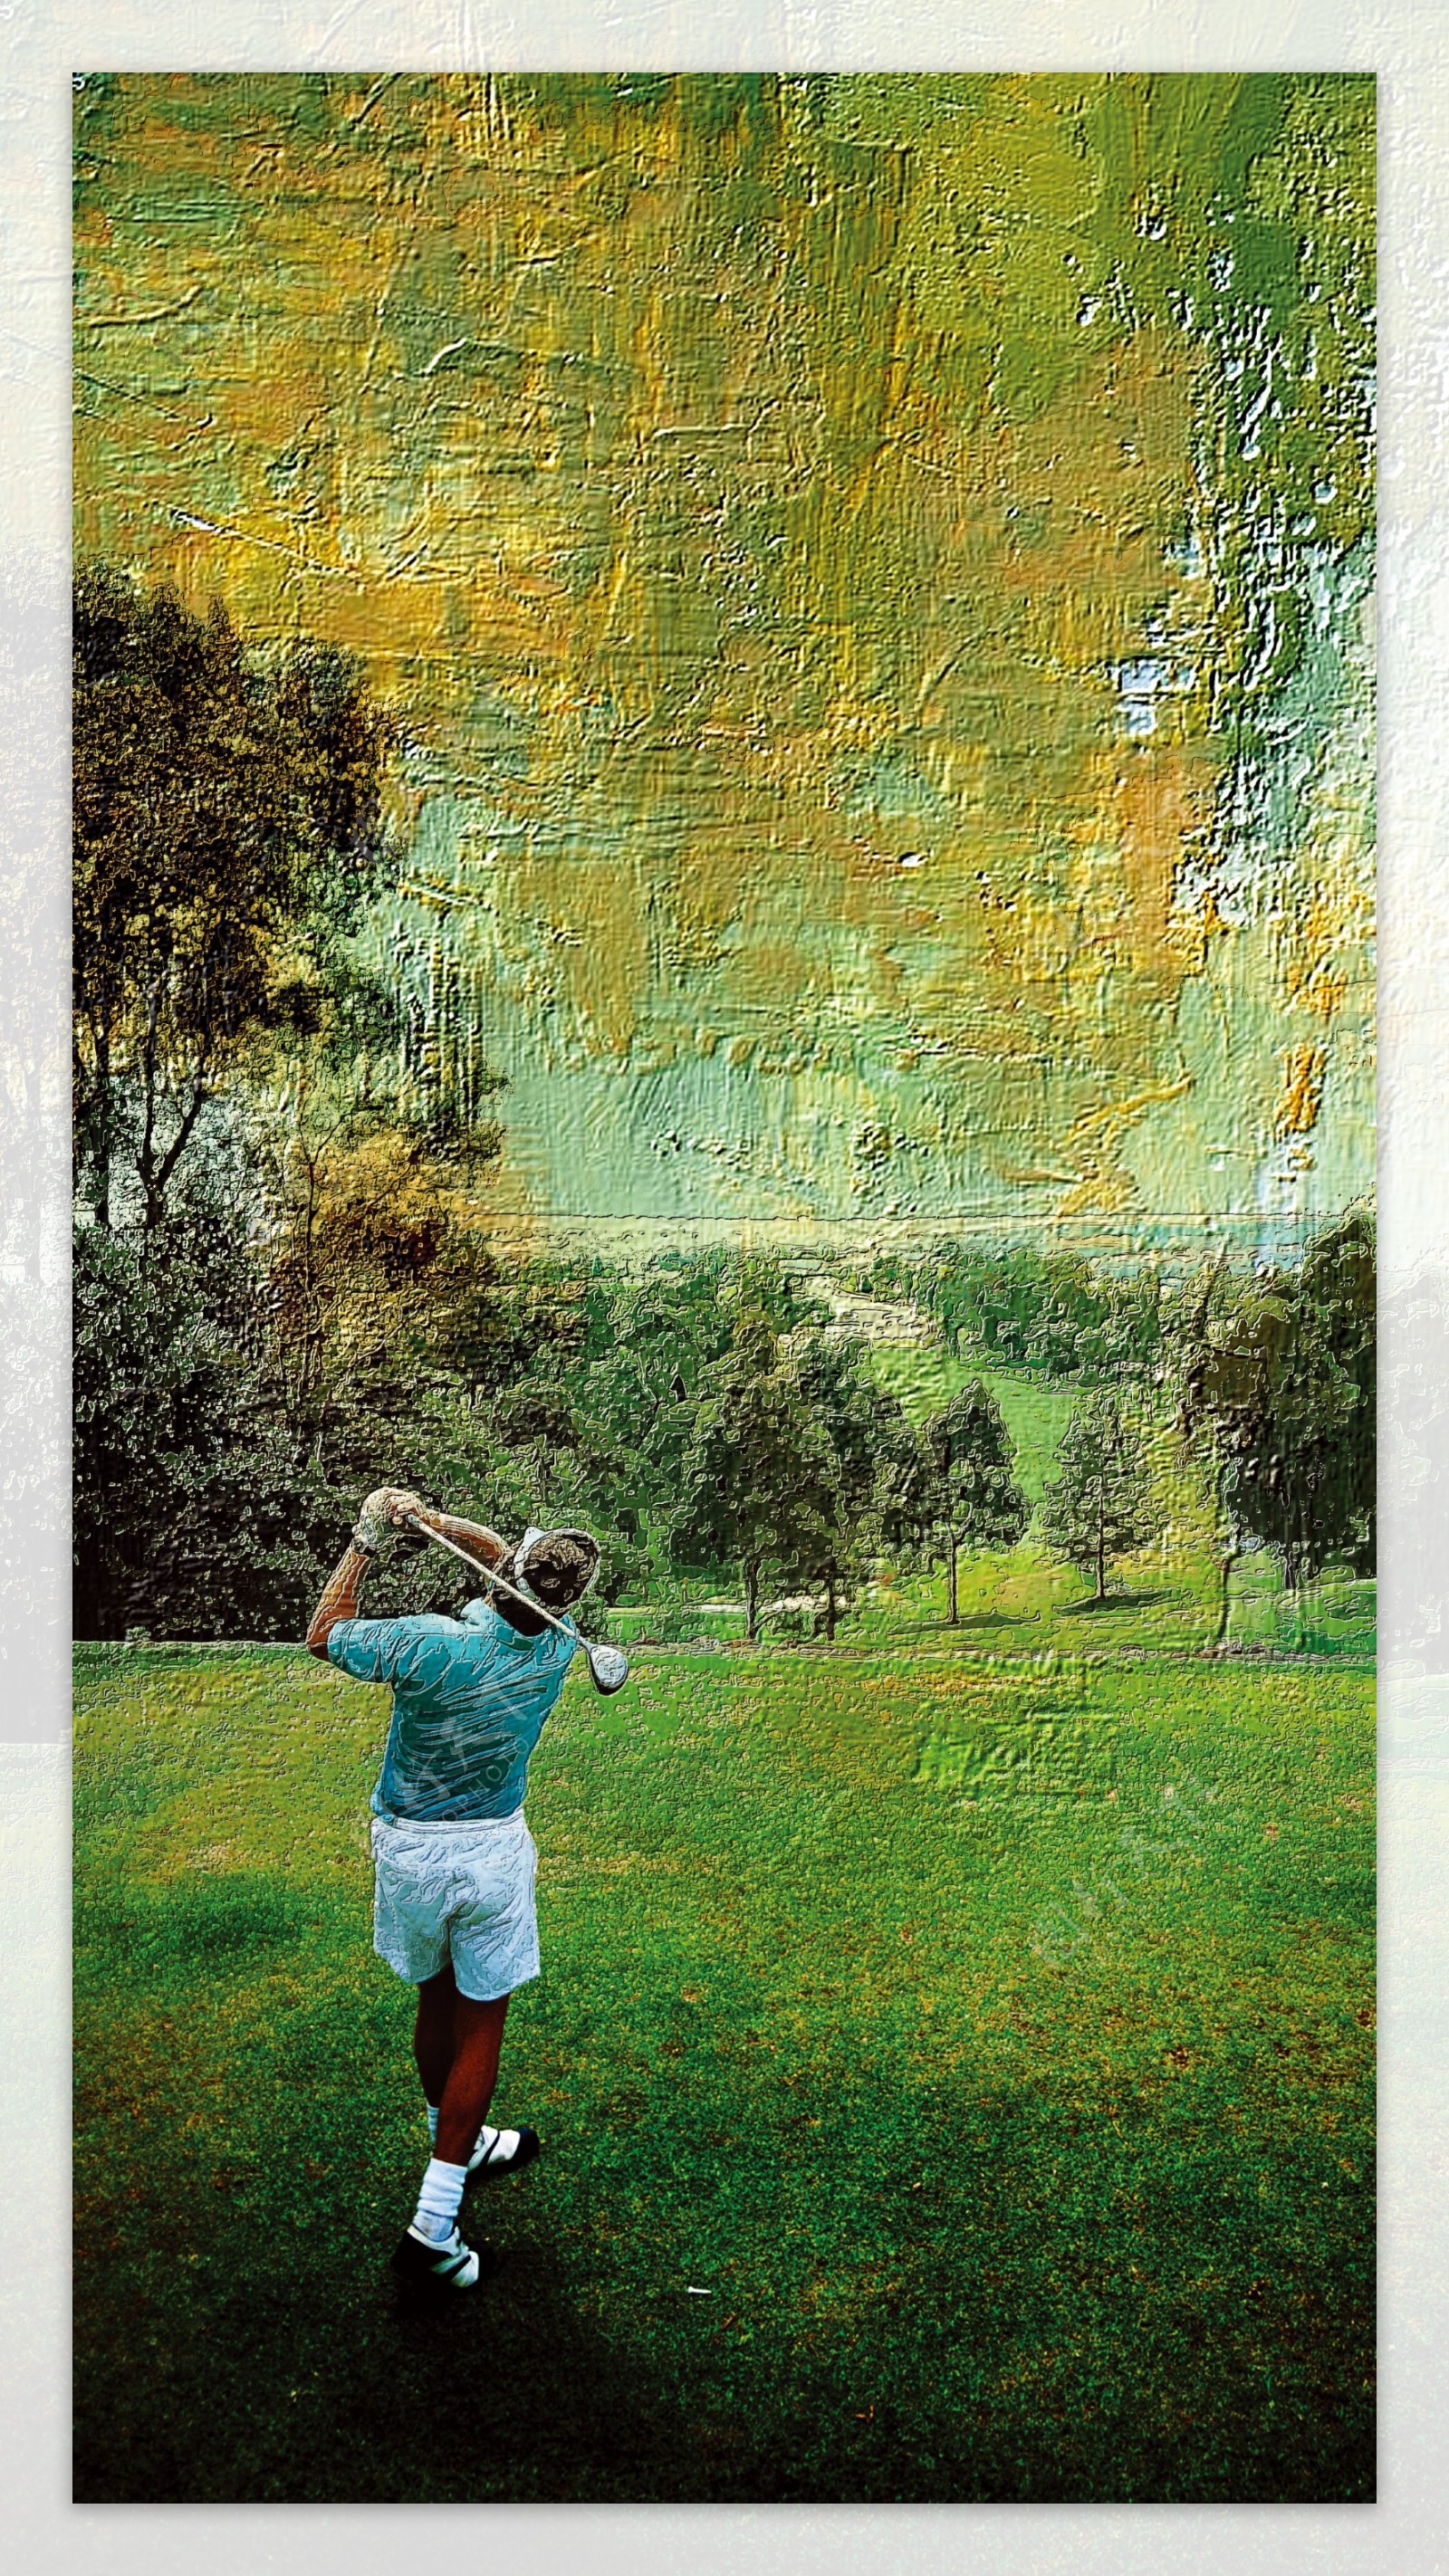 高尔夫油画绿地图片